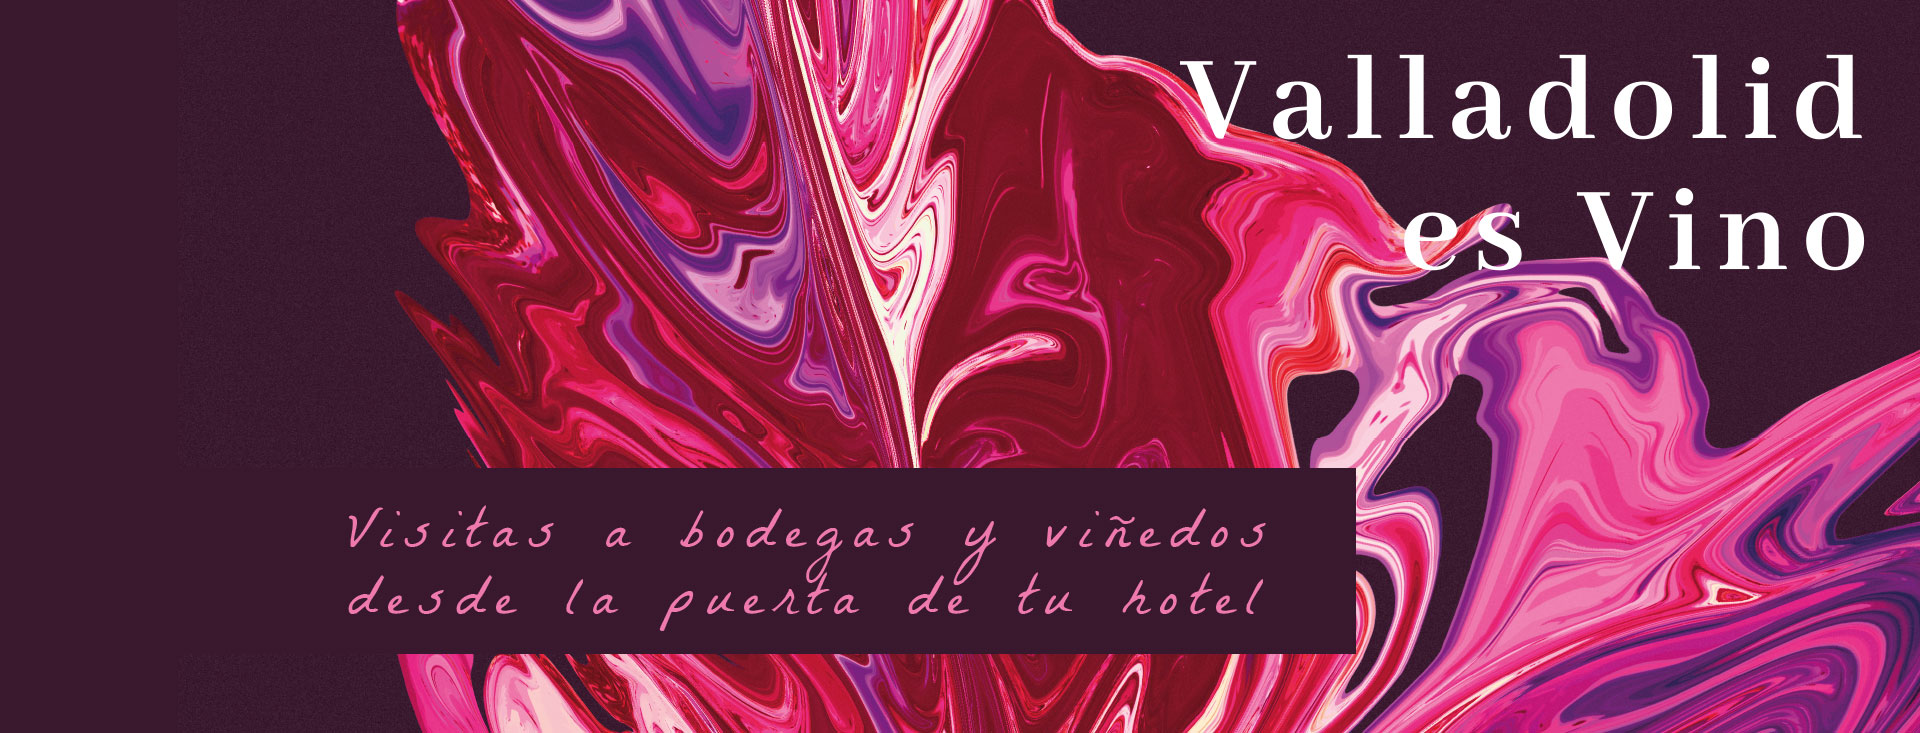 Valladolid es Vino